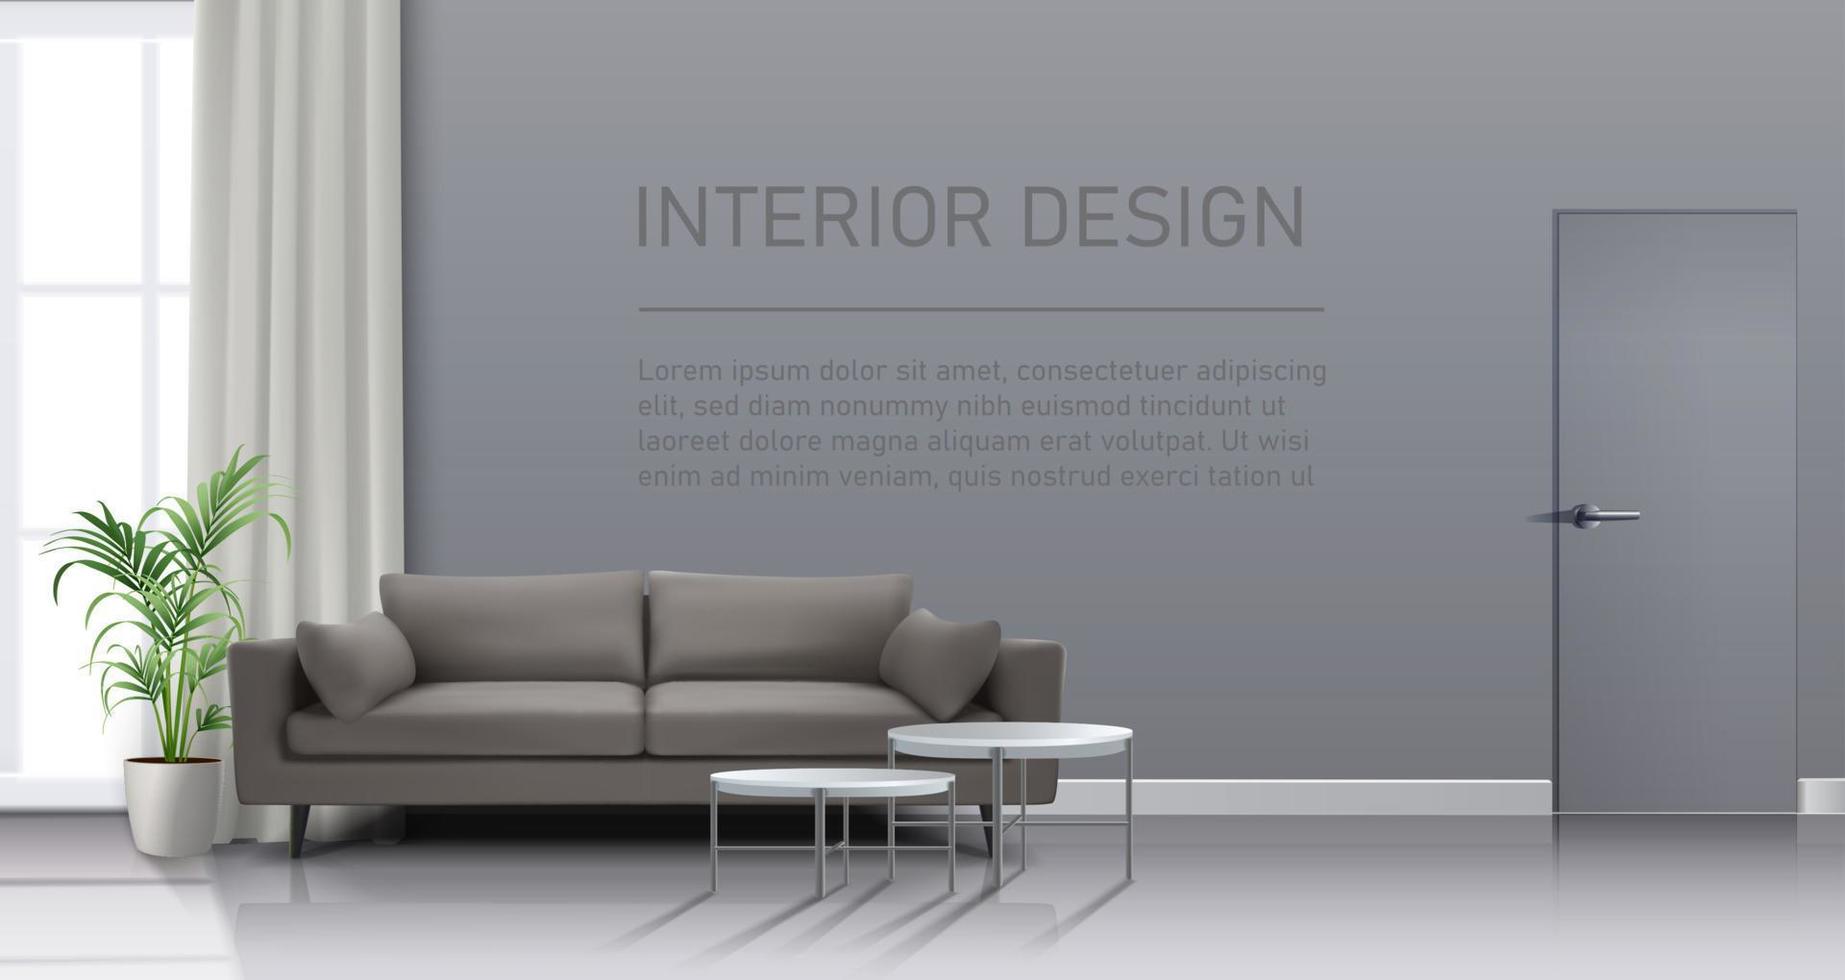 Interior de sala de estar vectorial realista en 3d con ventana, cortinas, sofá con mesas bajas y espacio para copiar su mensaje. vector